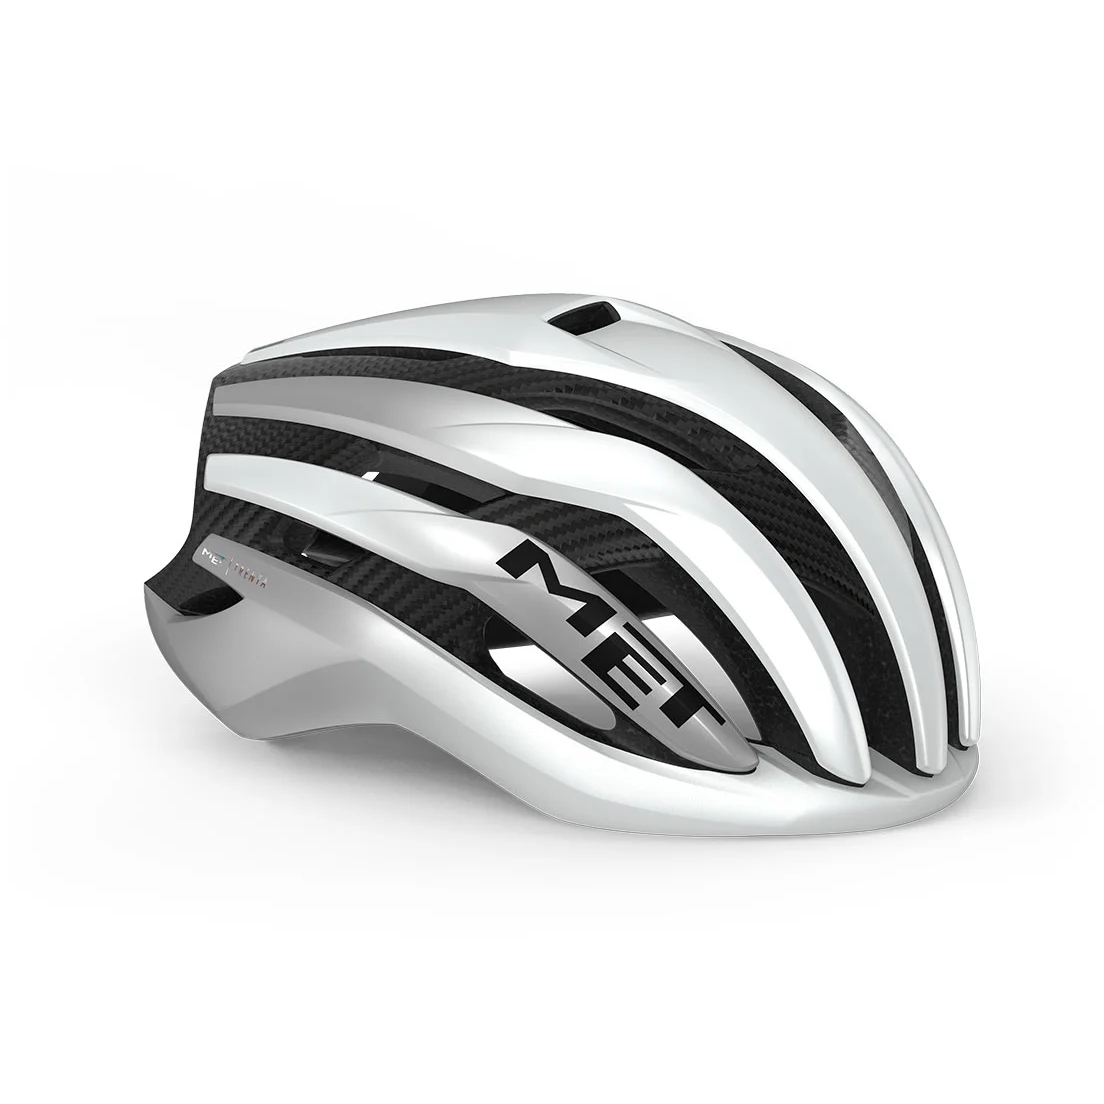 Produktbild von MET Trenta 3K Carbon MIPS Helm - White Silver Metallic/Matt